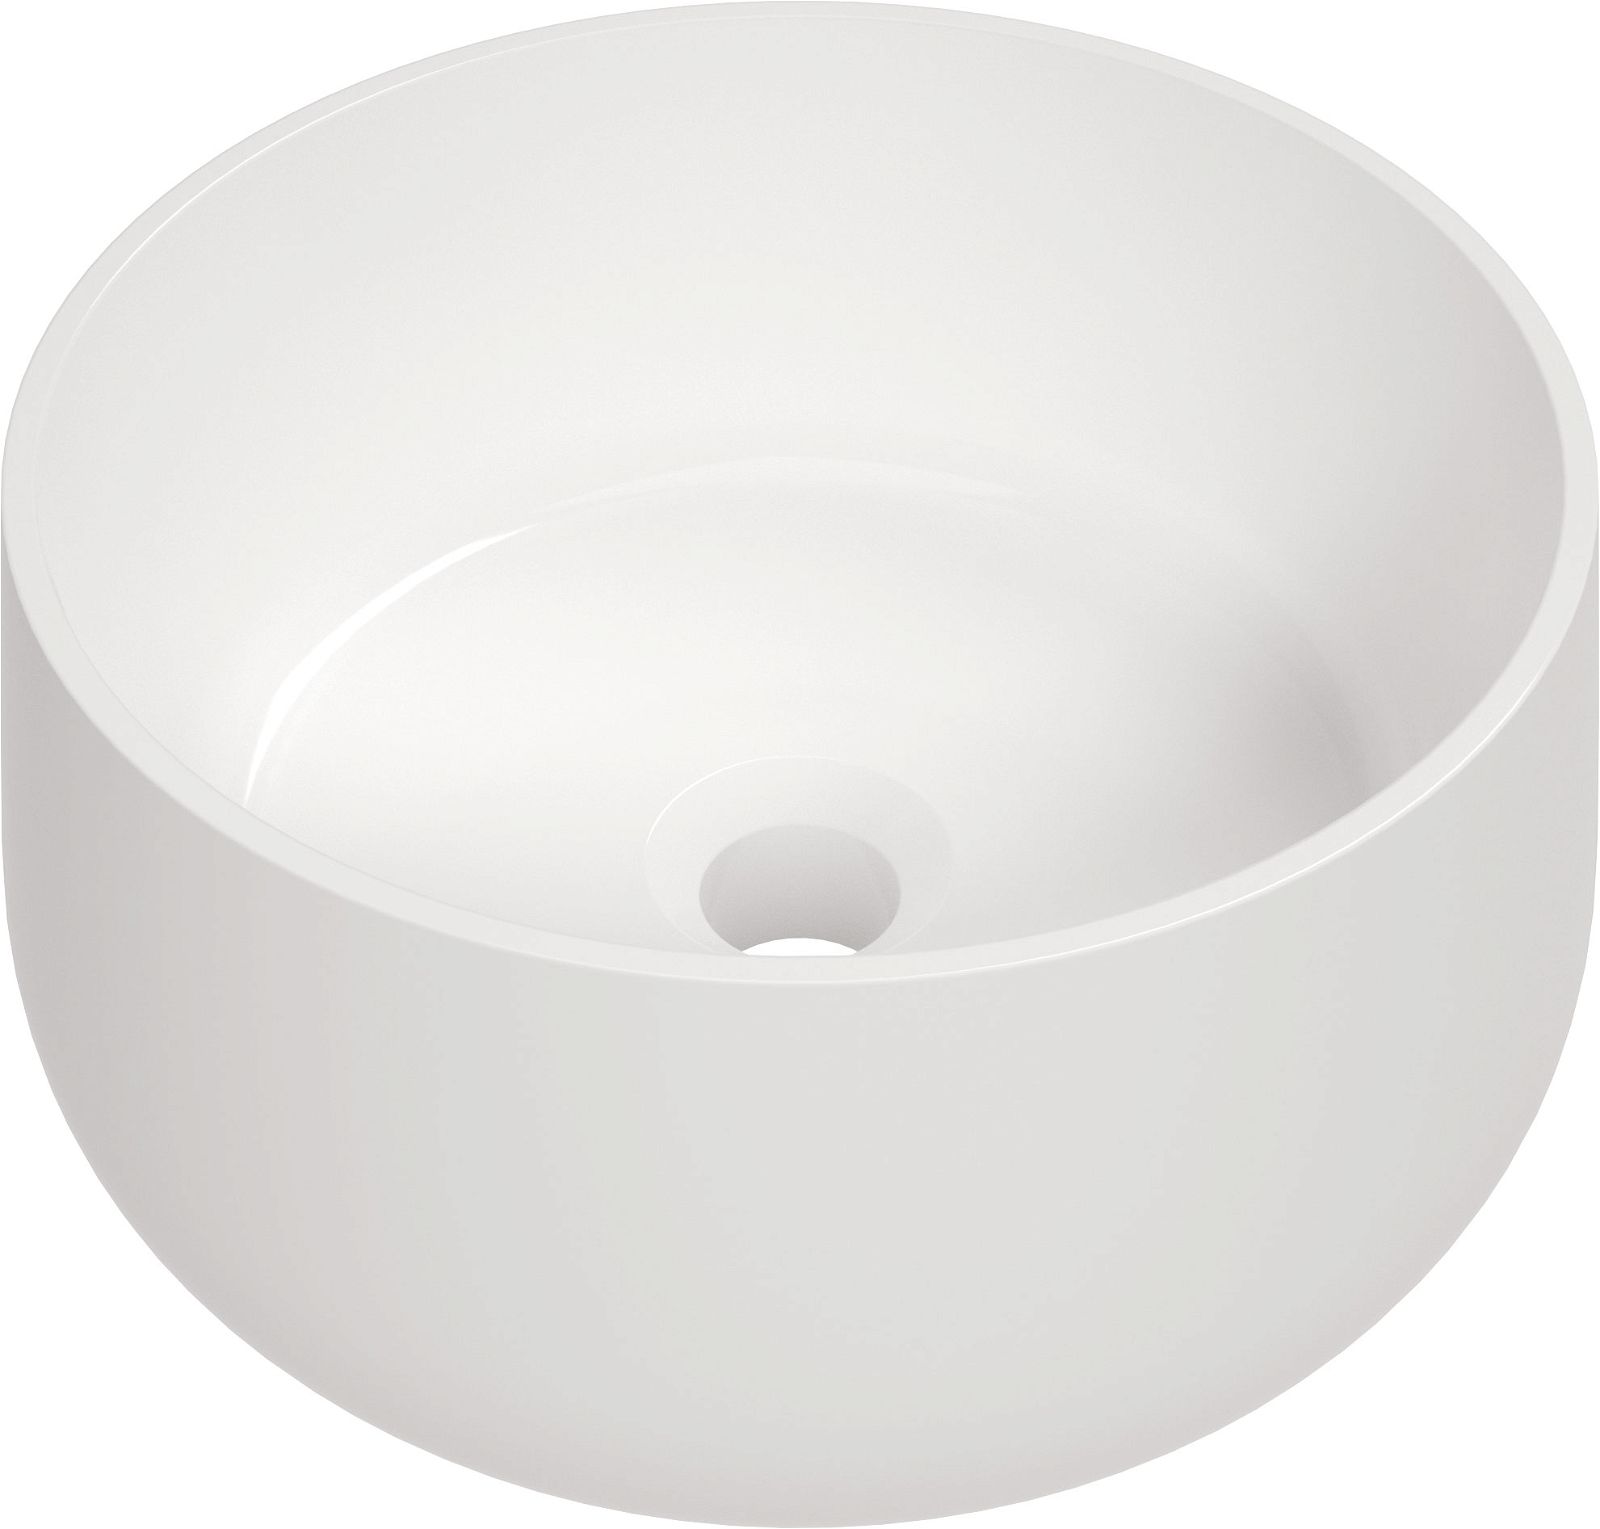 Ceramic washbasin, countertop - CGN_6U33 - Główne zdjęcie produktowe